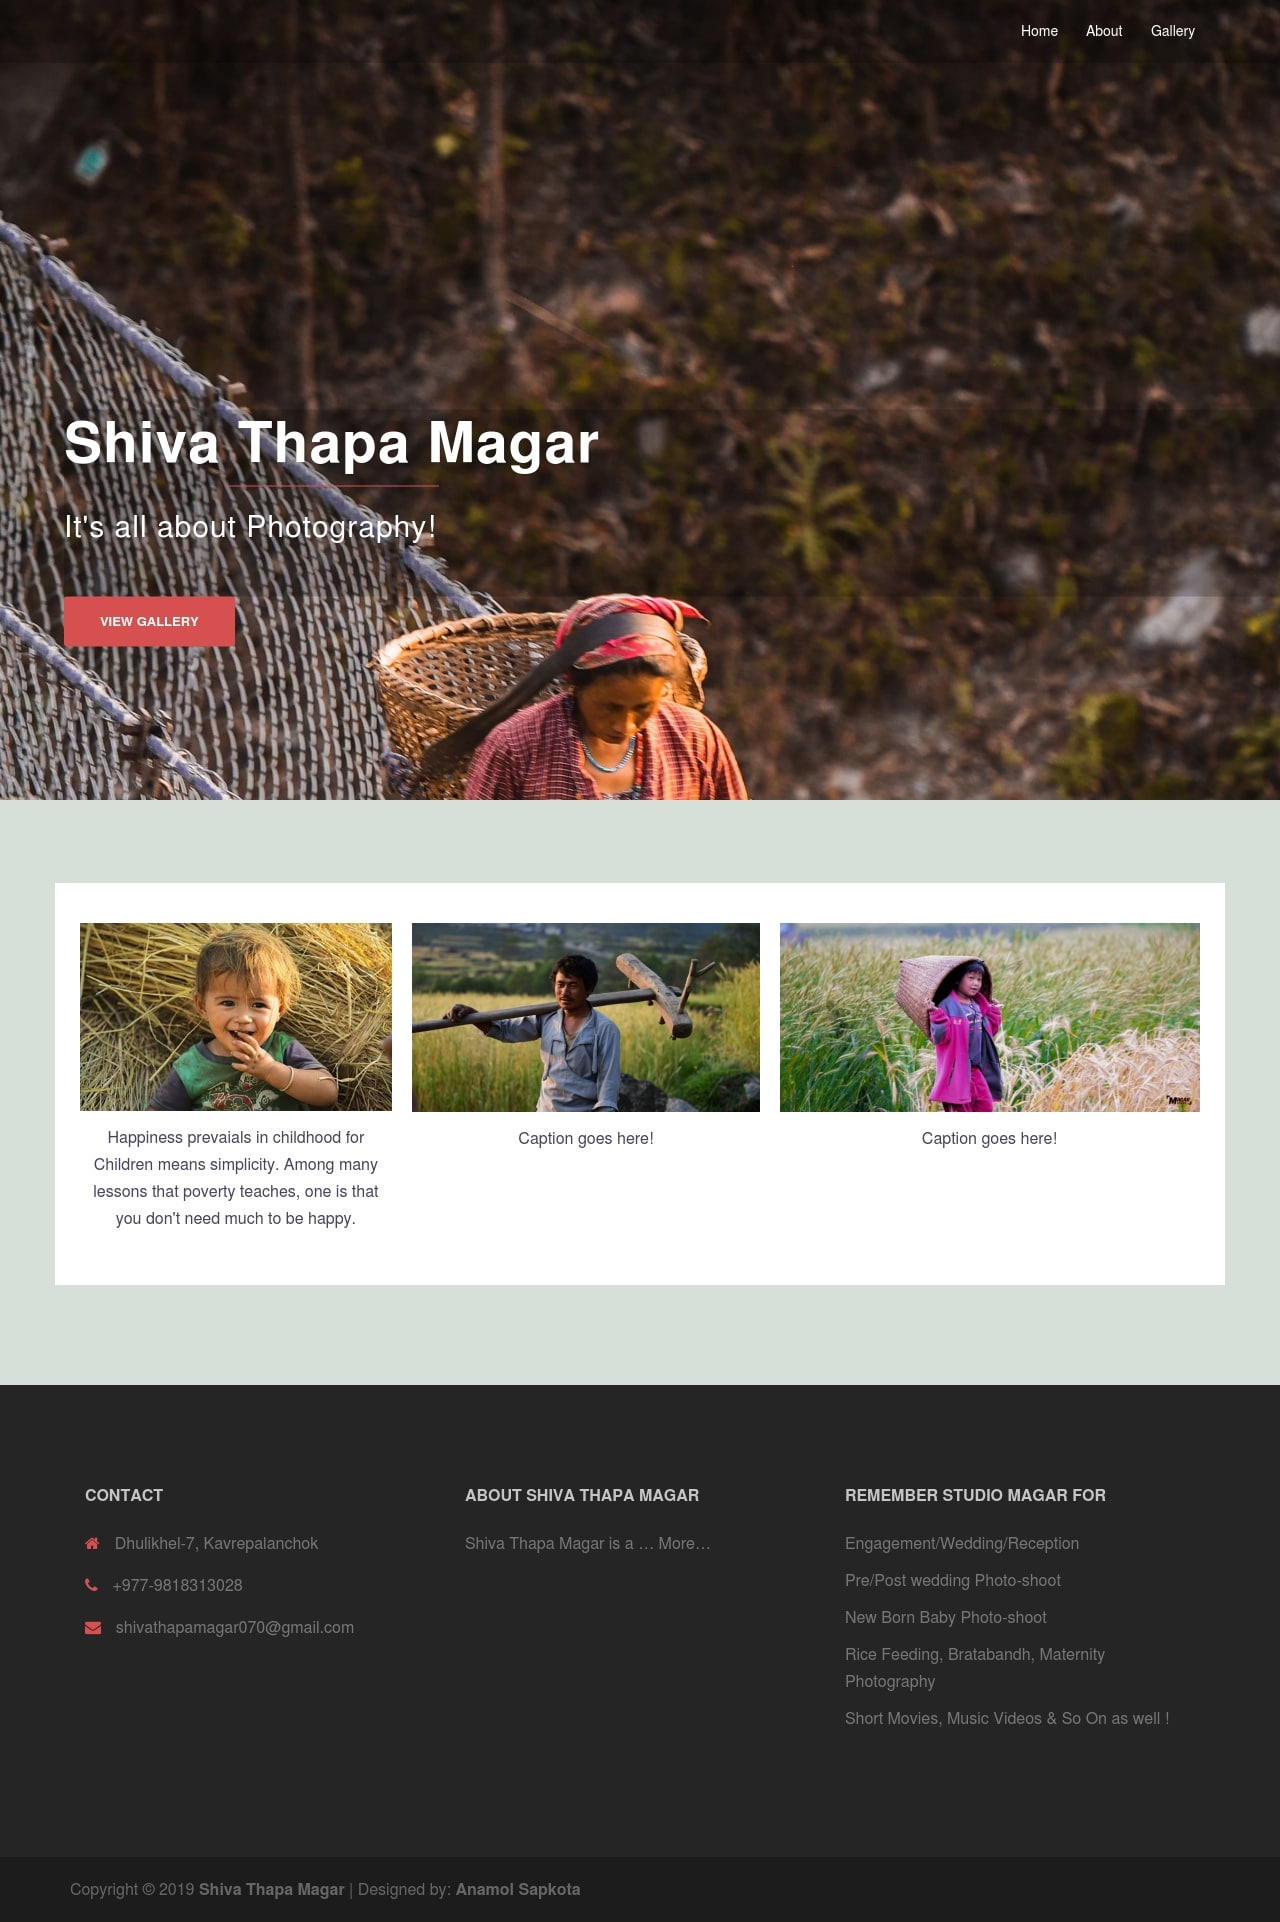 Shiva Thapa Magar